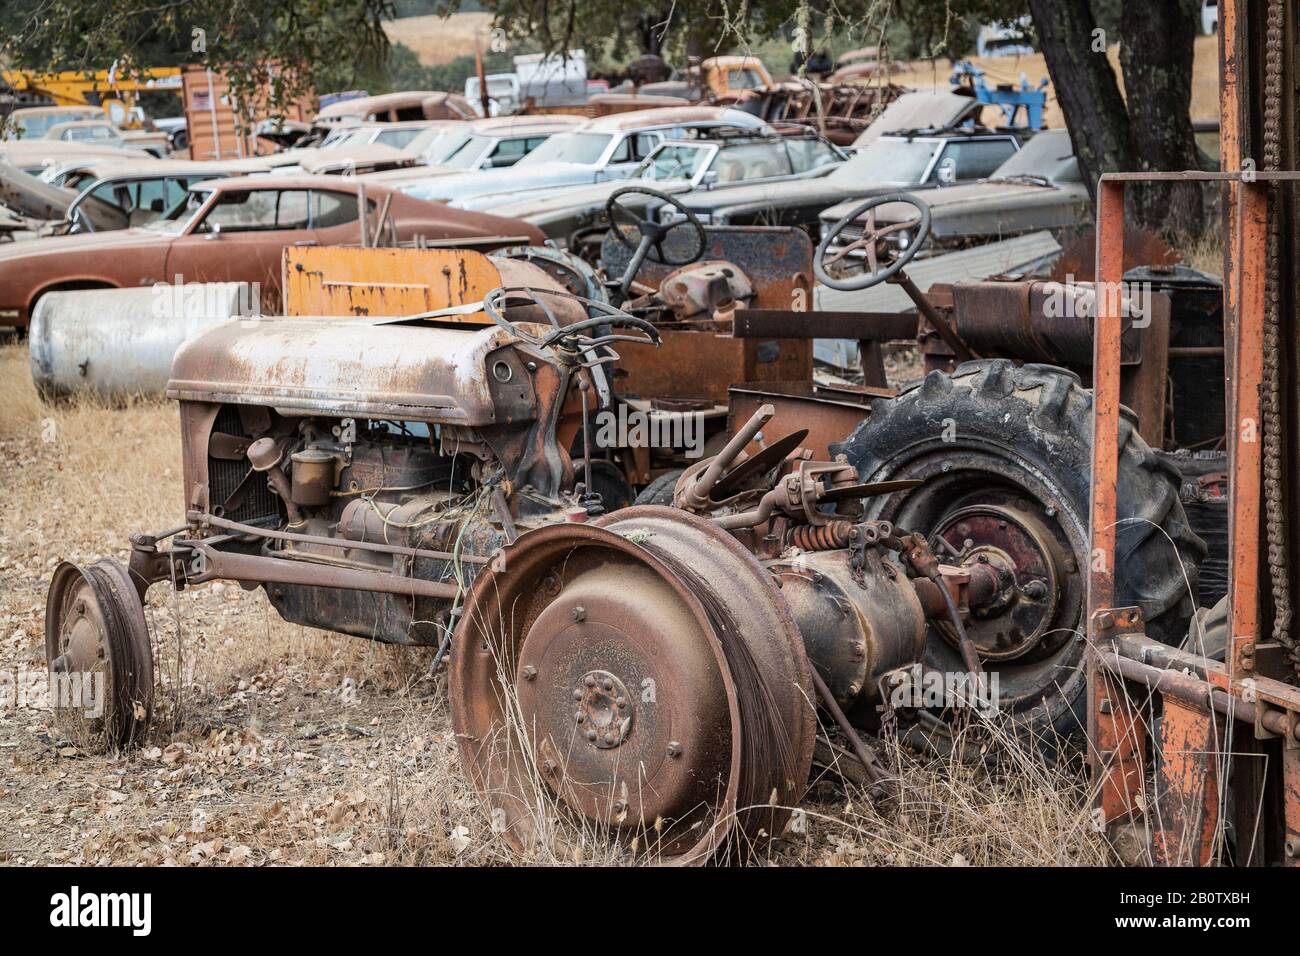 Rostige Alte Maschinen Zu Bewundern Stockfoto